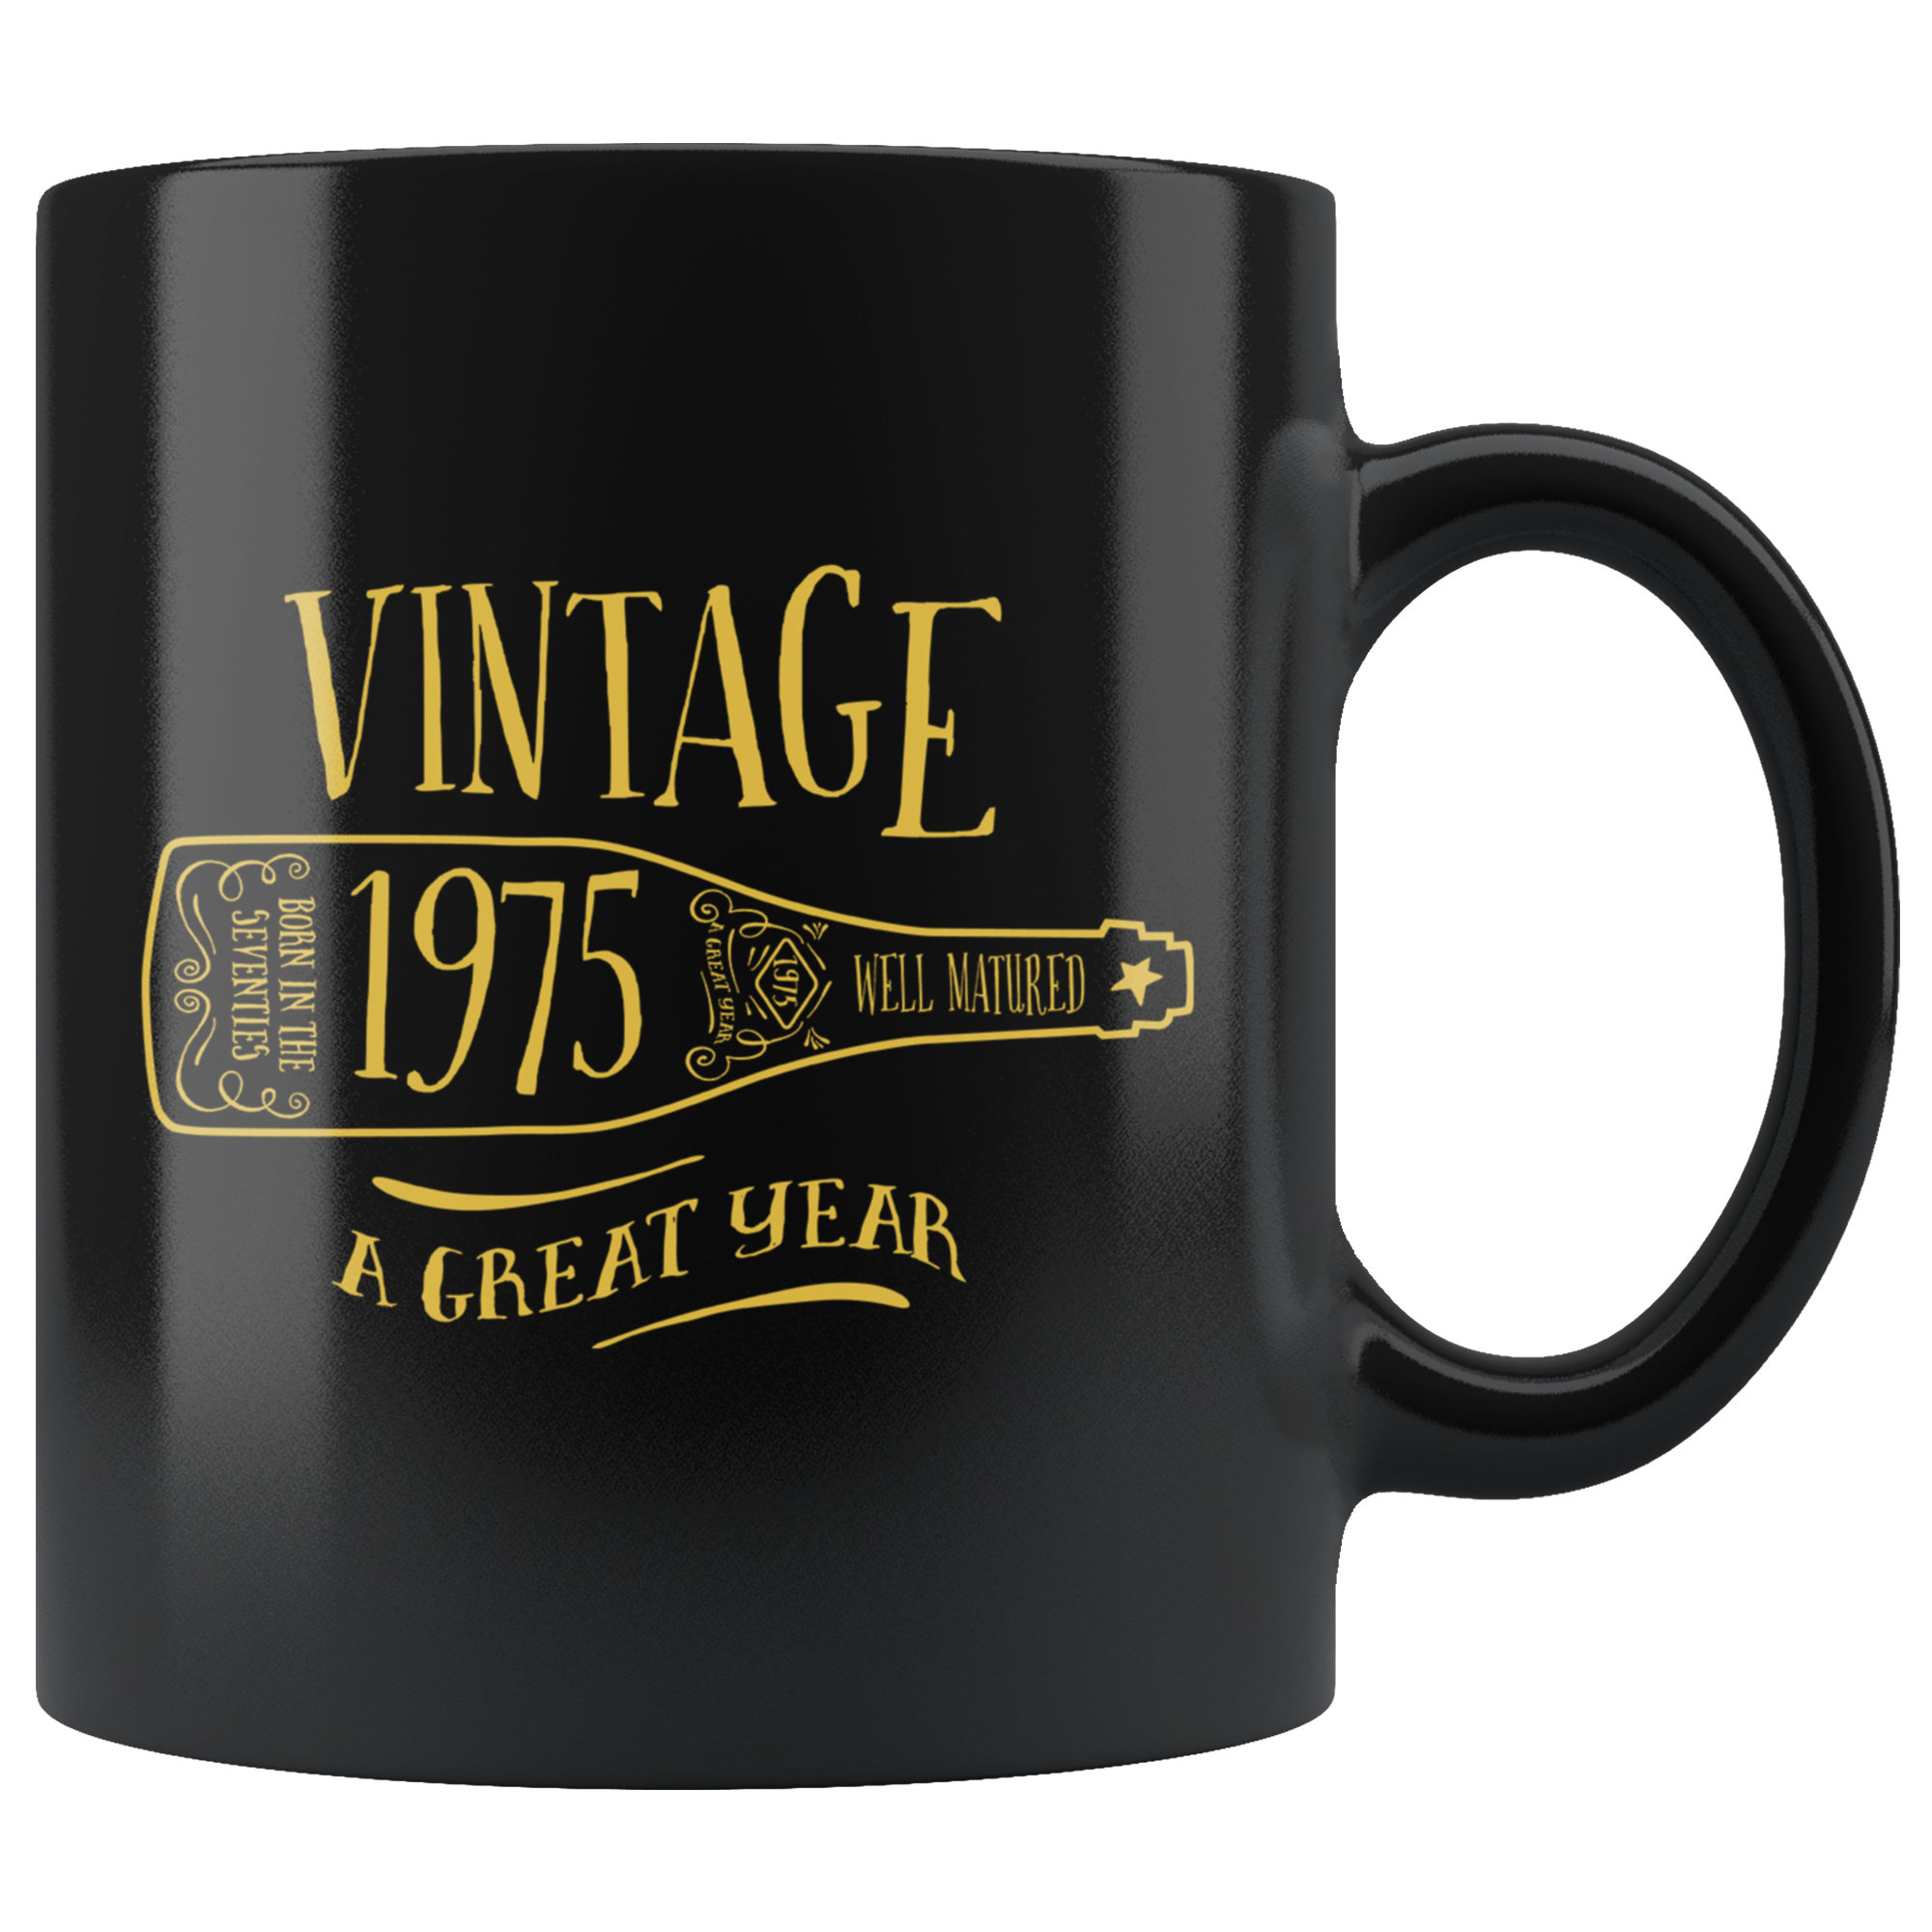 Vintage 1975 - Black Mug